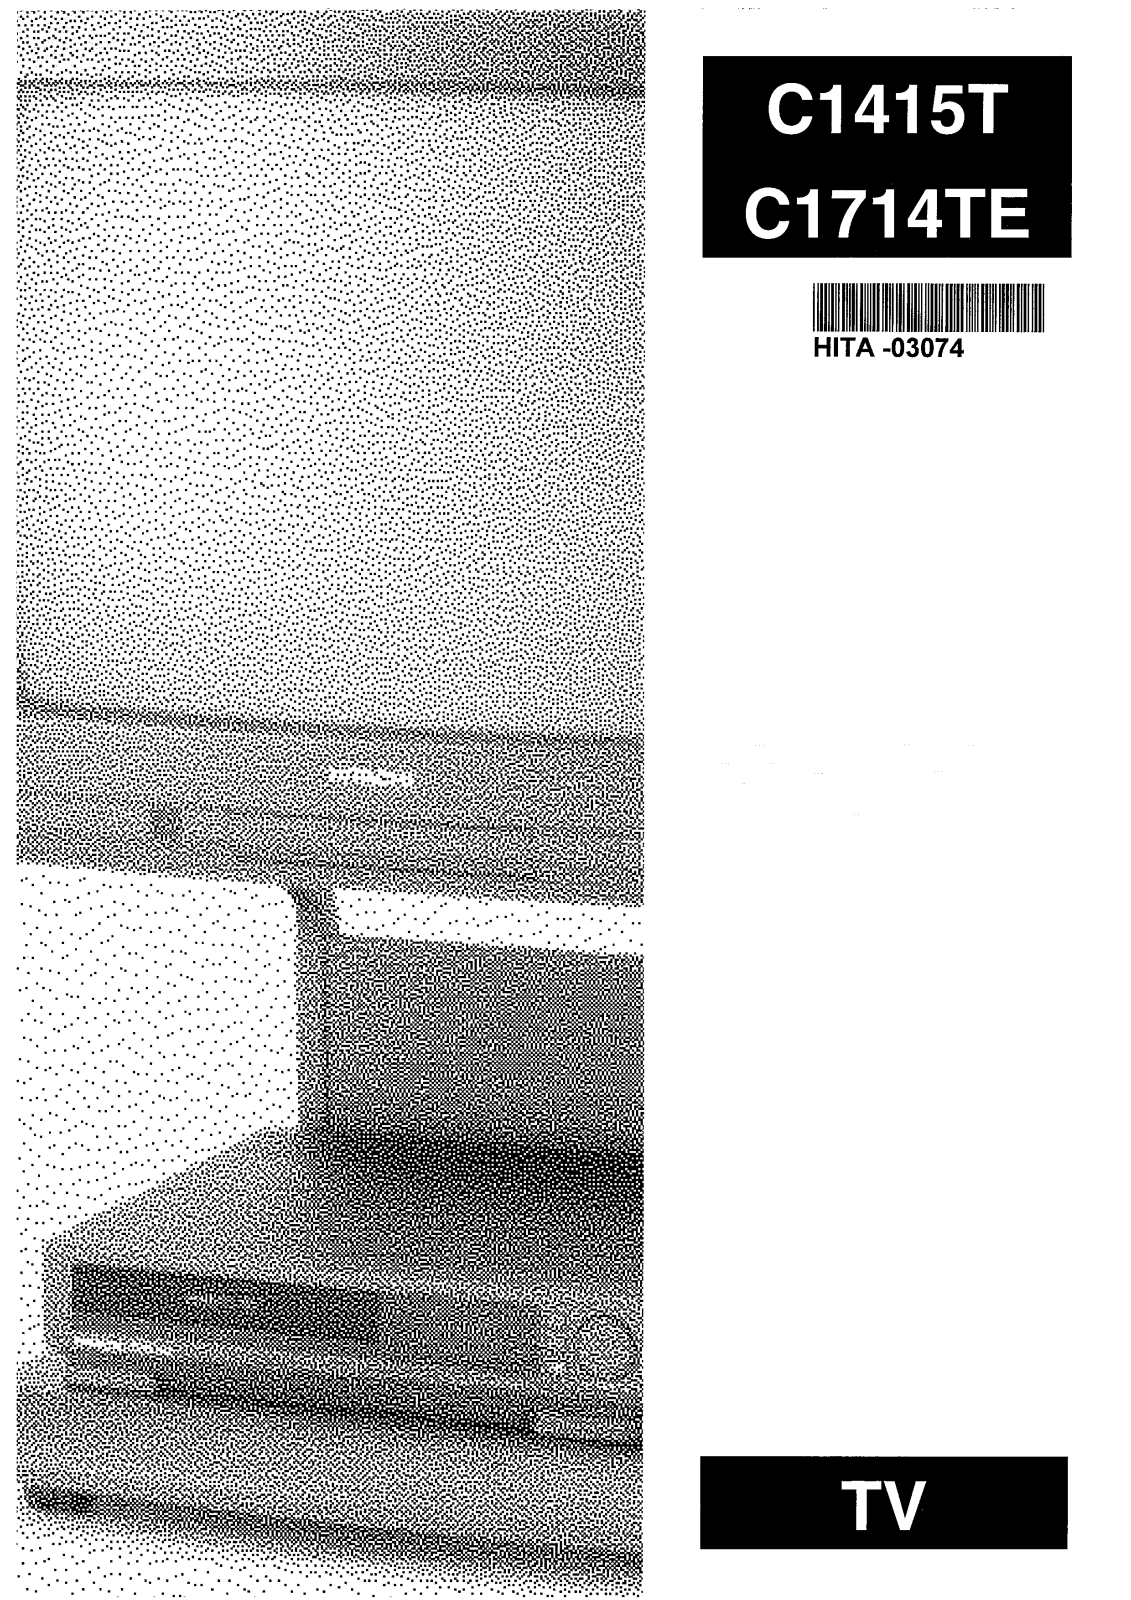 Hitachi C1415T, C1714TE User Manual